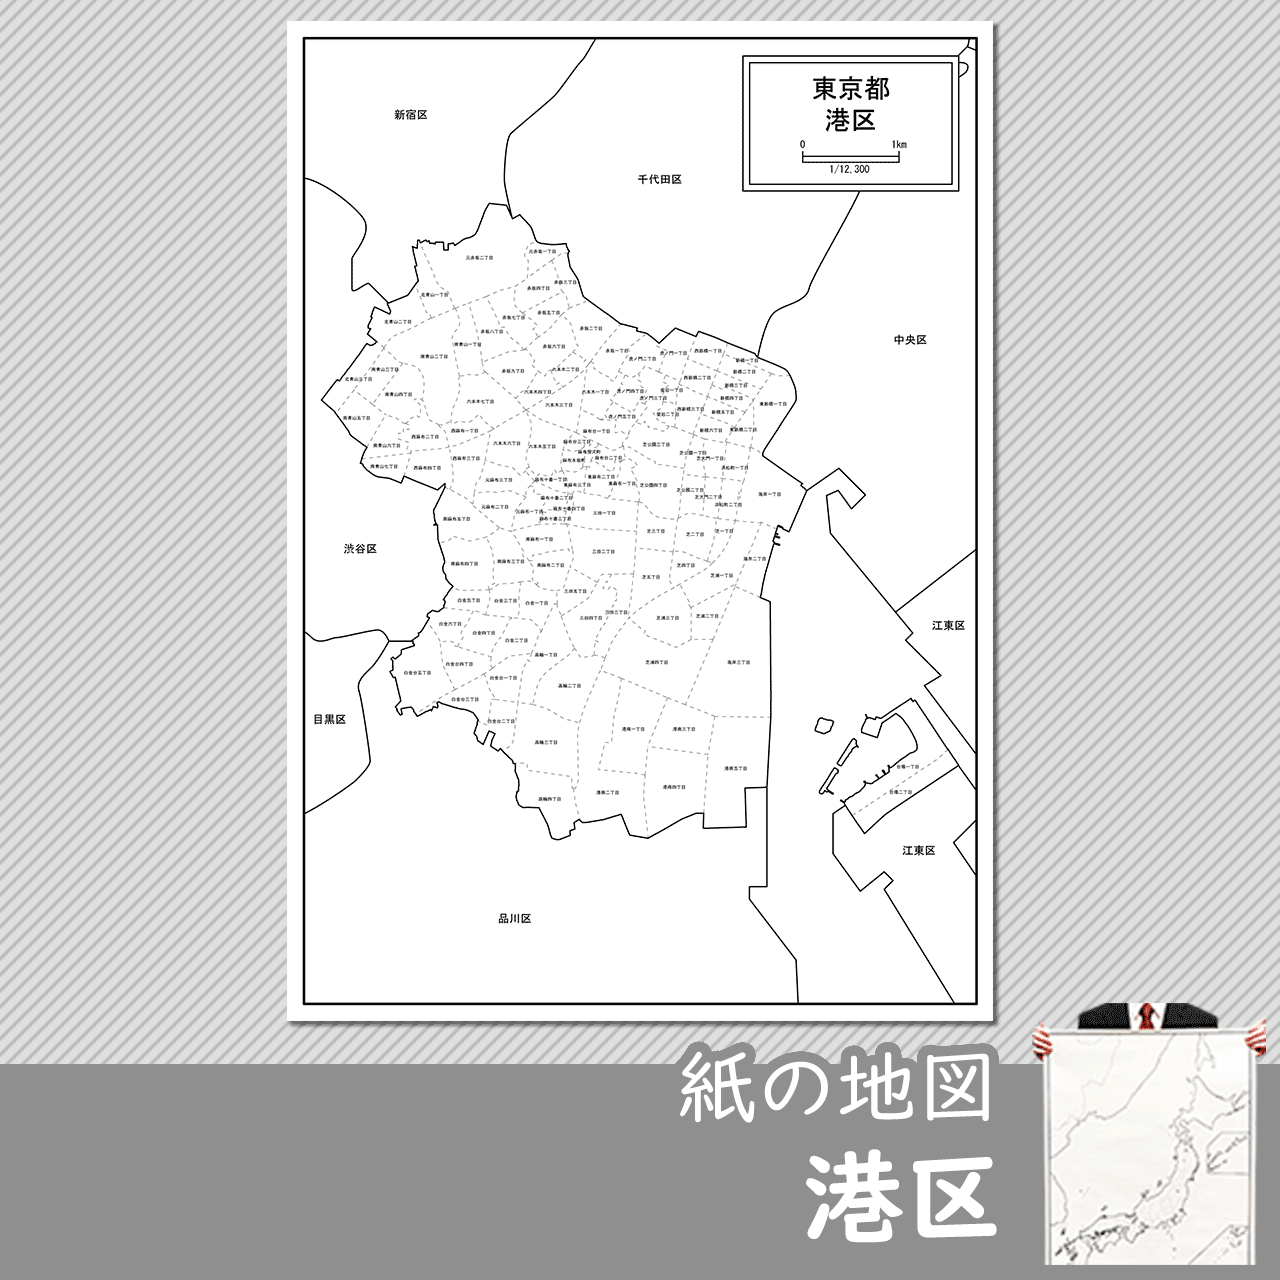 東京都港区の紙の白地図のサムネイル